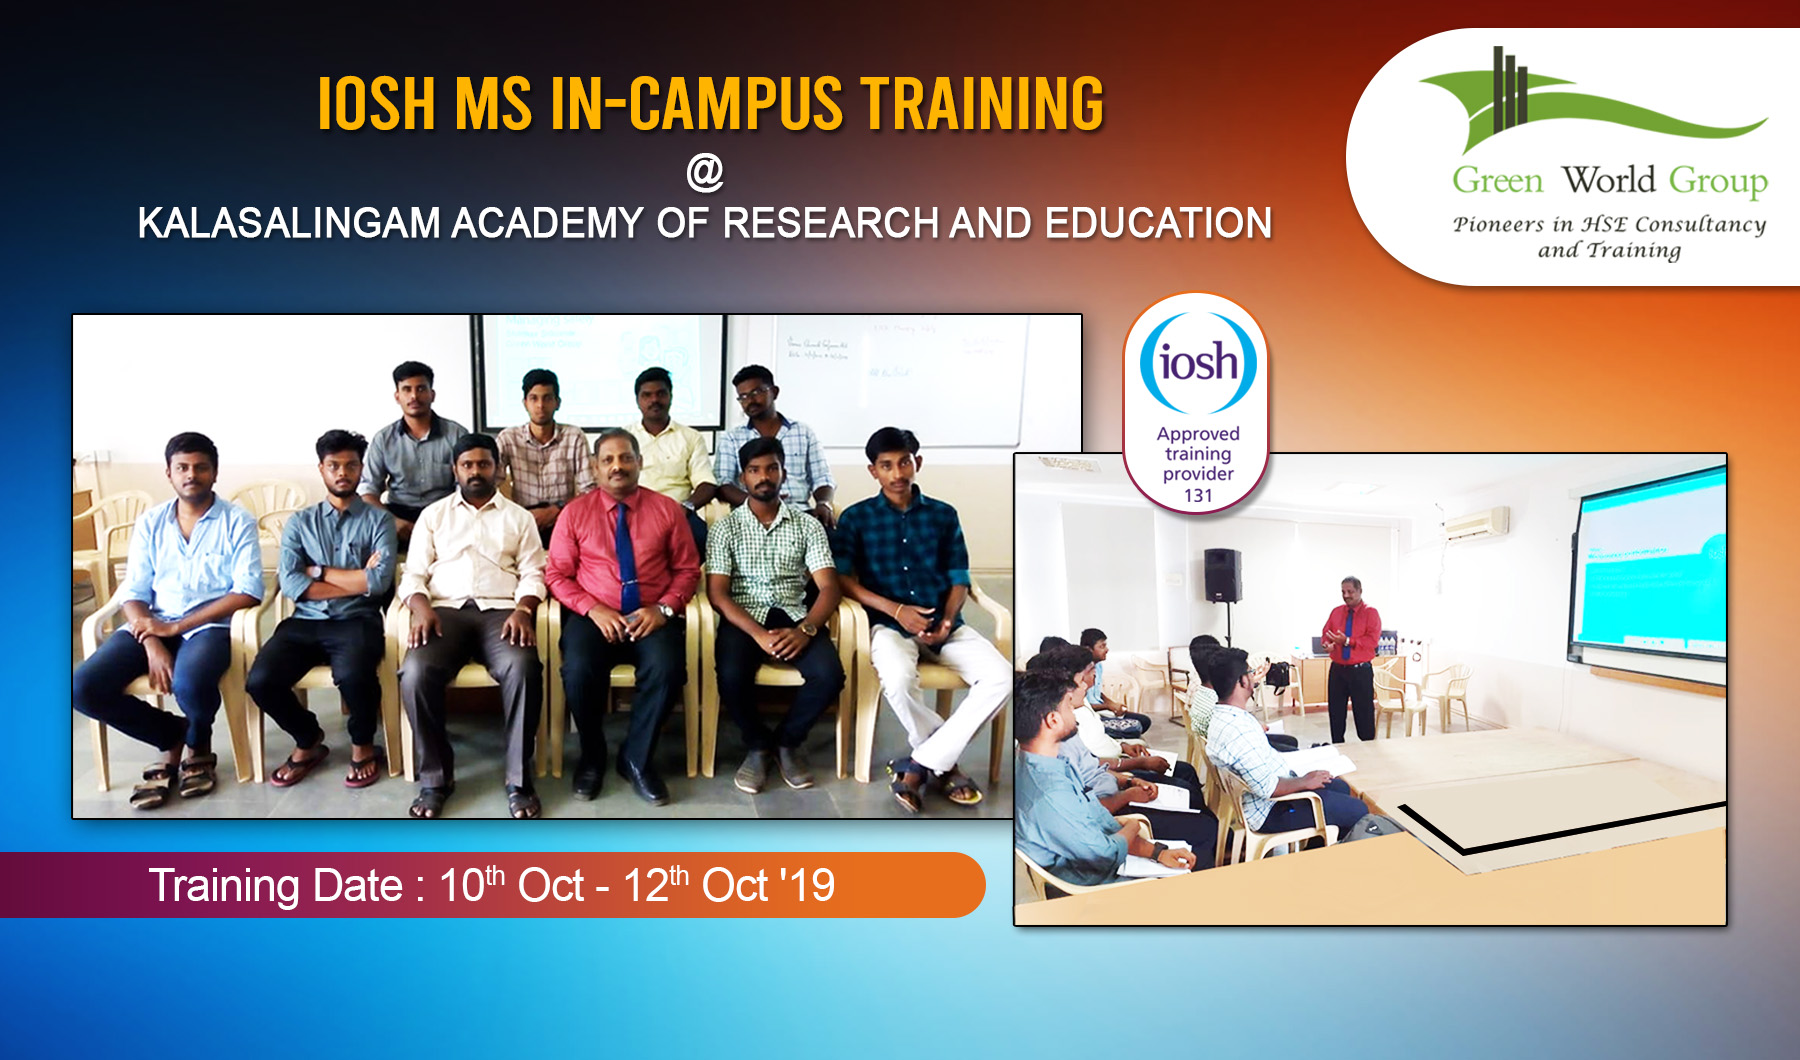 iosh-ms-training-course-in-campus